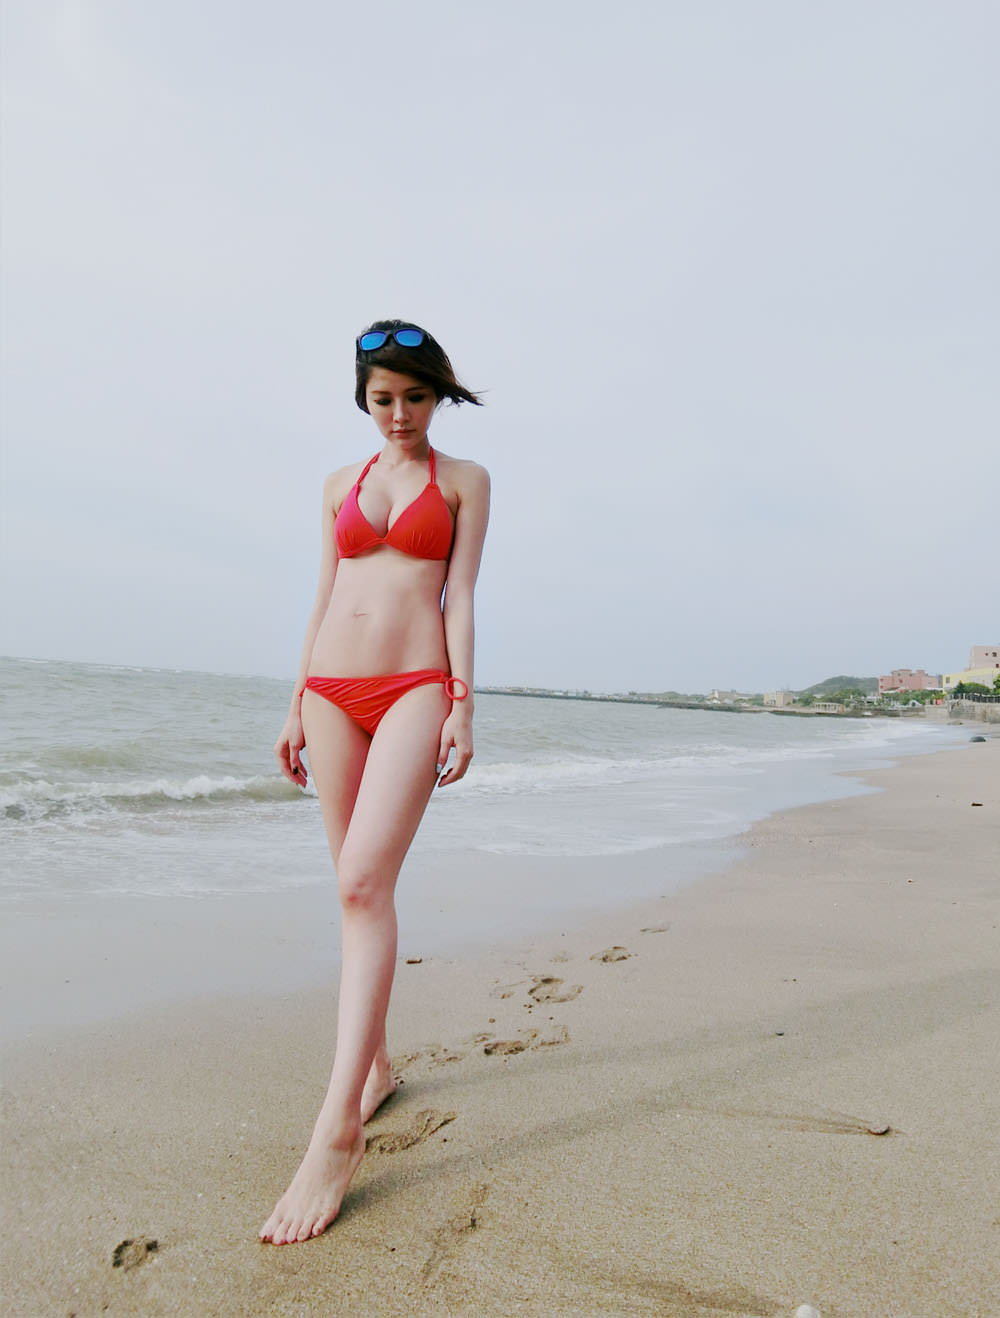 [泳衣] WAVE SHINE Bikini美波神器,海邊必備超強比基尼,小胸也可以出現漂亮的溝溝